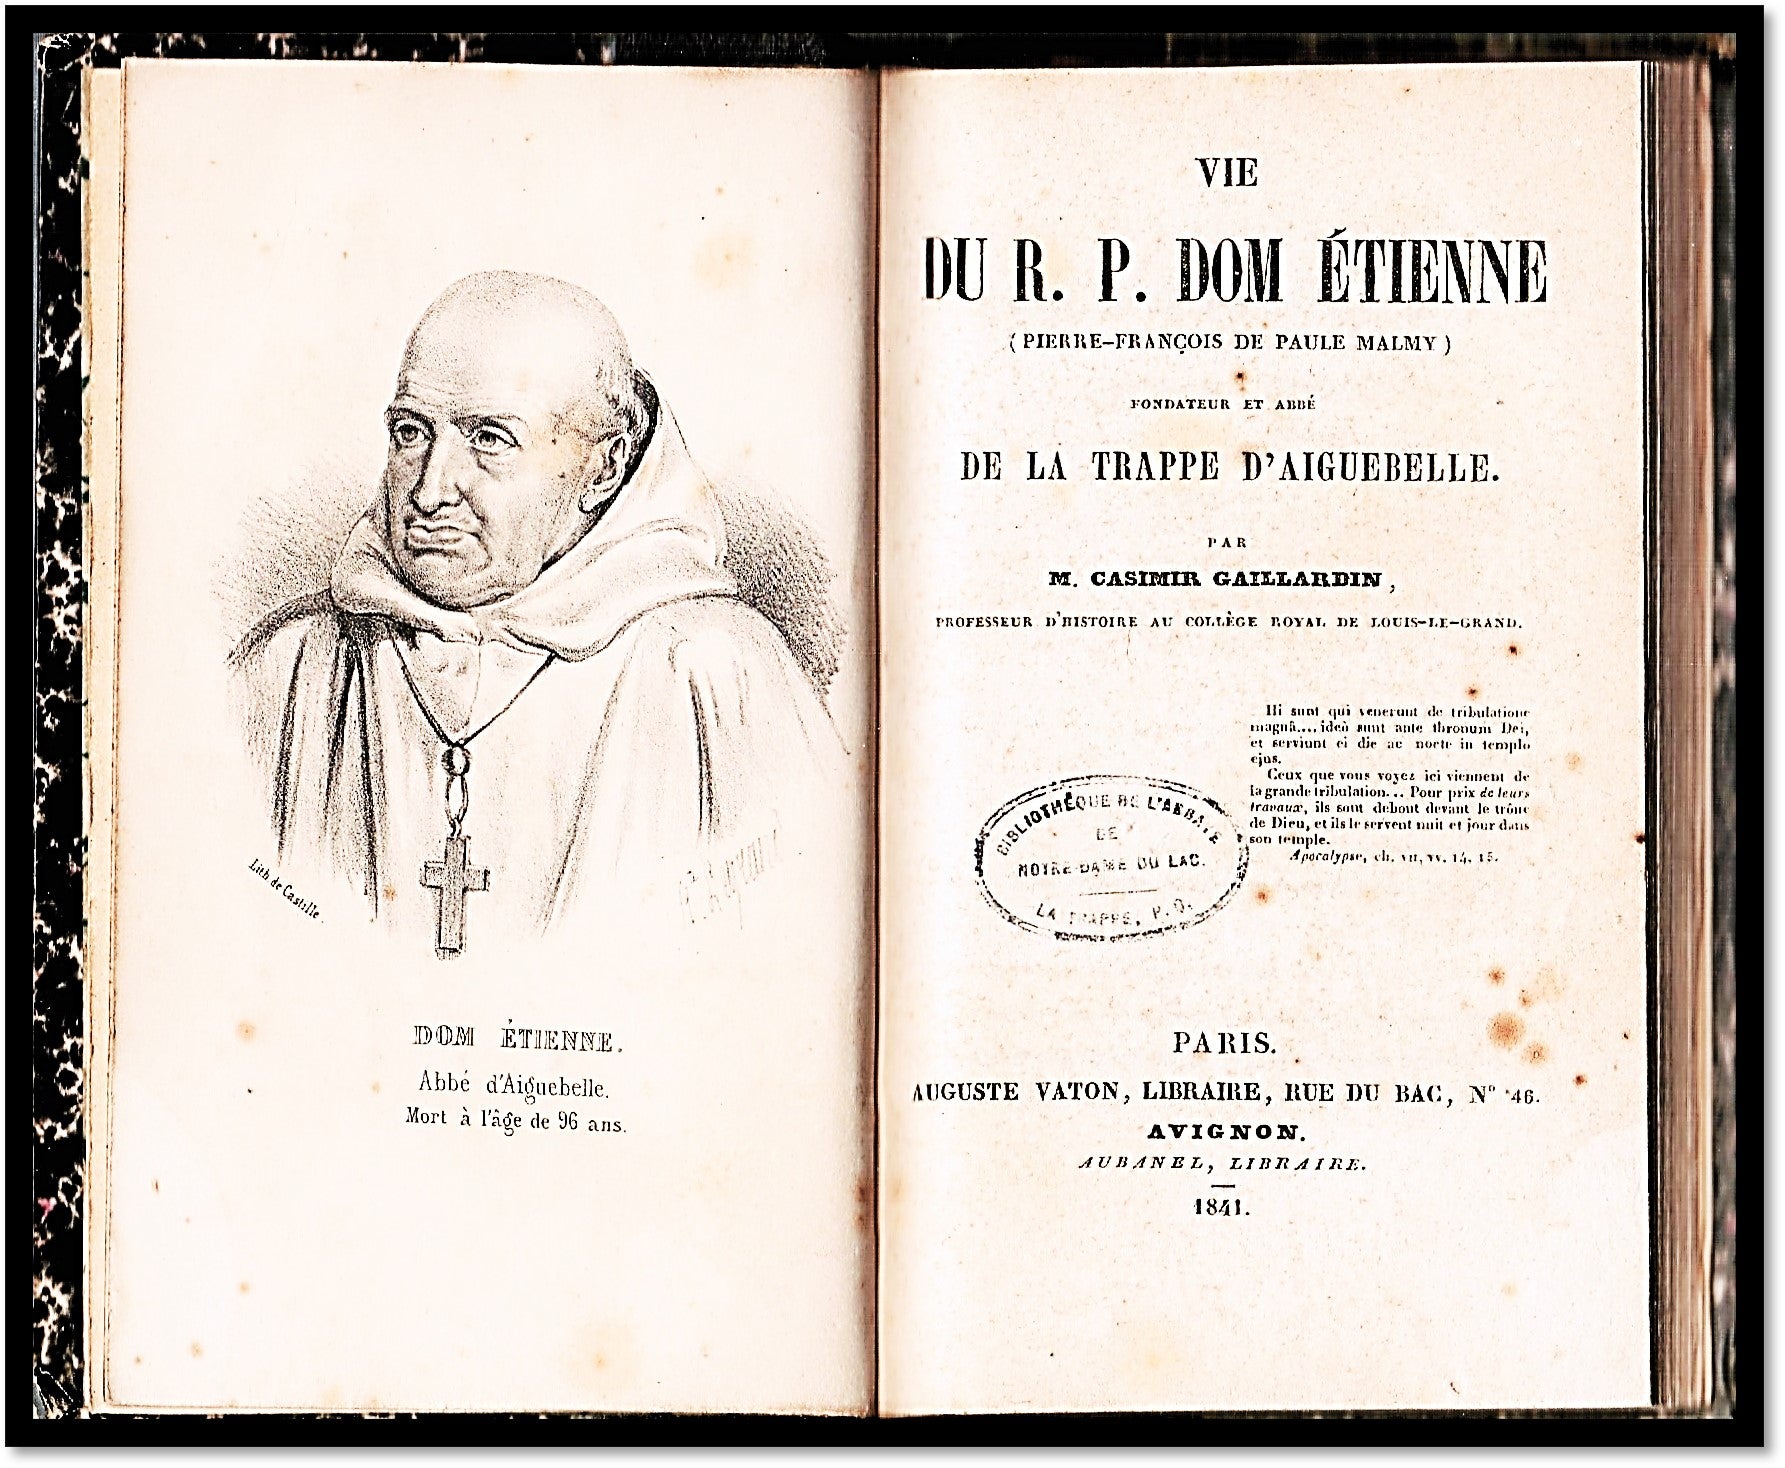 [Trappist Monk, Founder De La Trappe D'Aiguebelle] Vie du R. P. Dom Etienne. (Pierre-Francois De Paule Malmy) Foundateur Et Abbe De La Trappe D'Aiguebelle